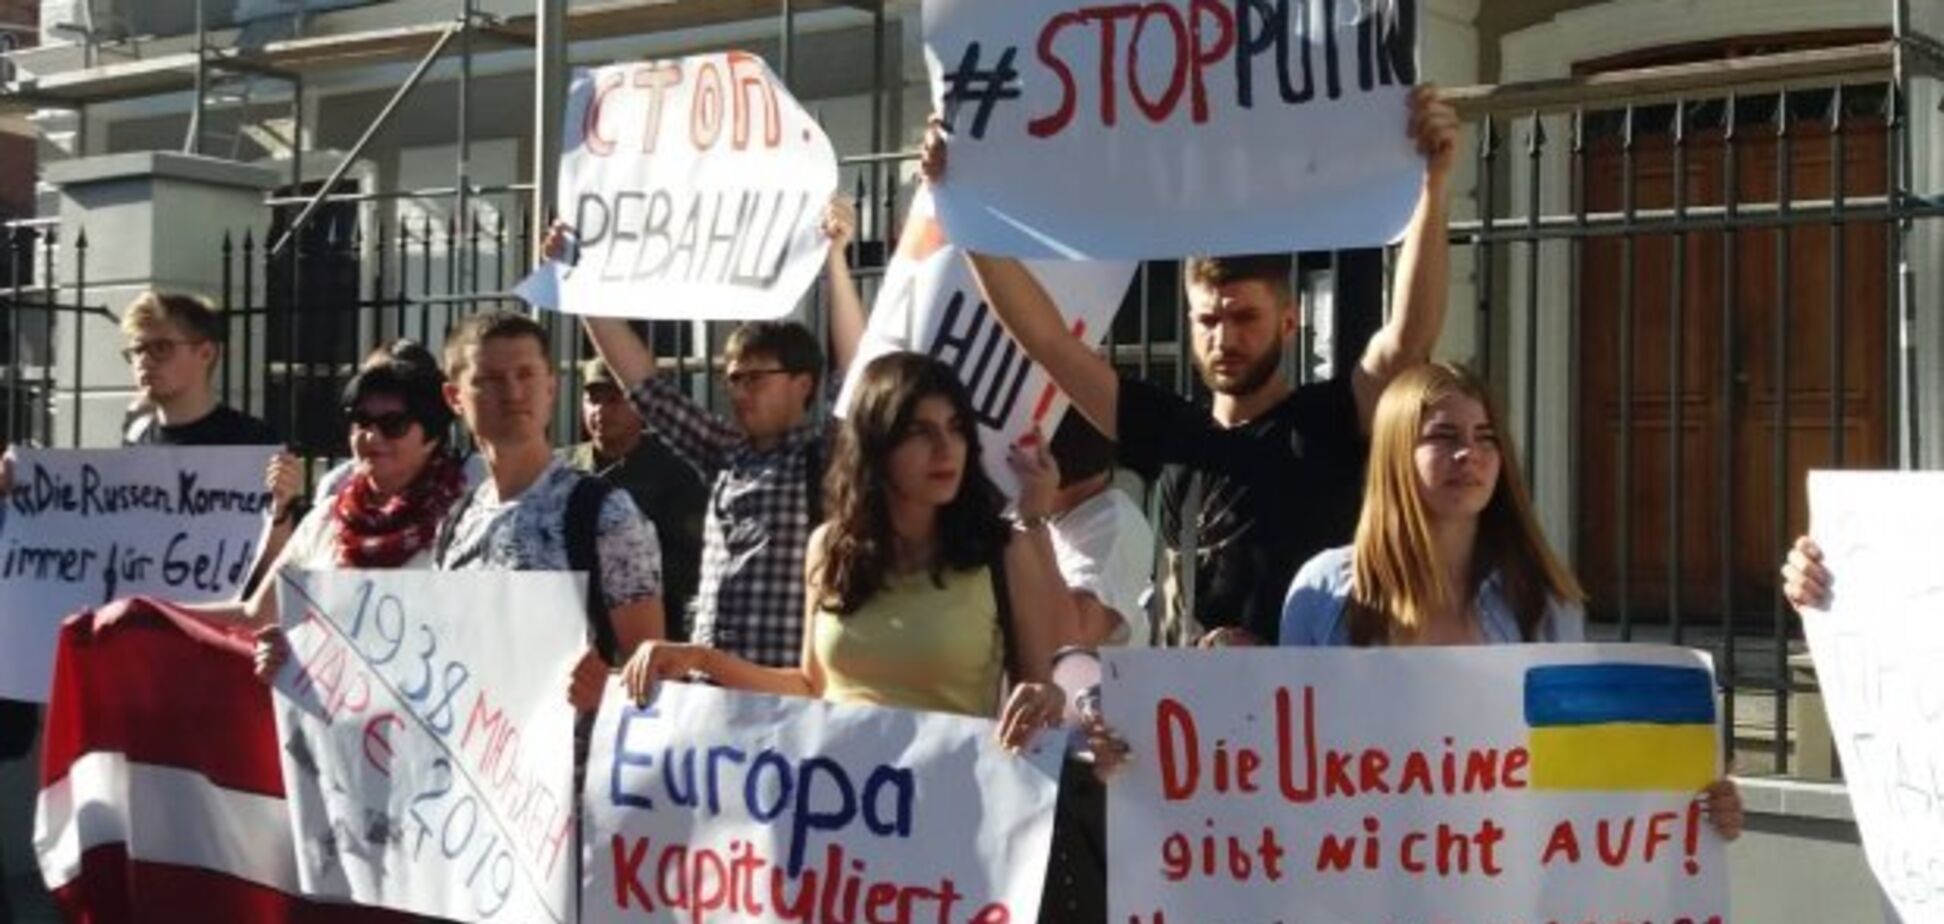 Протест под посольством Австрии